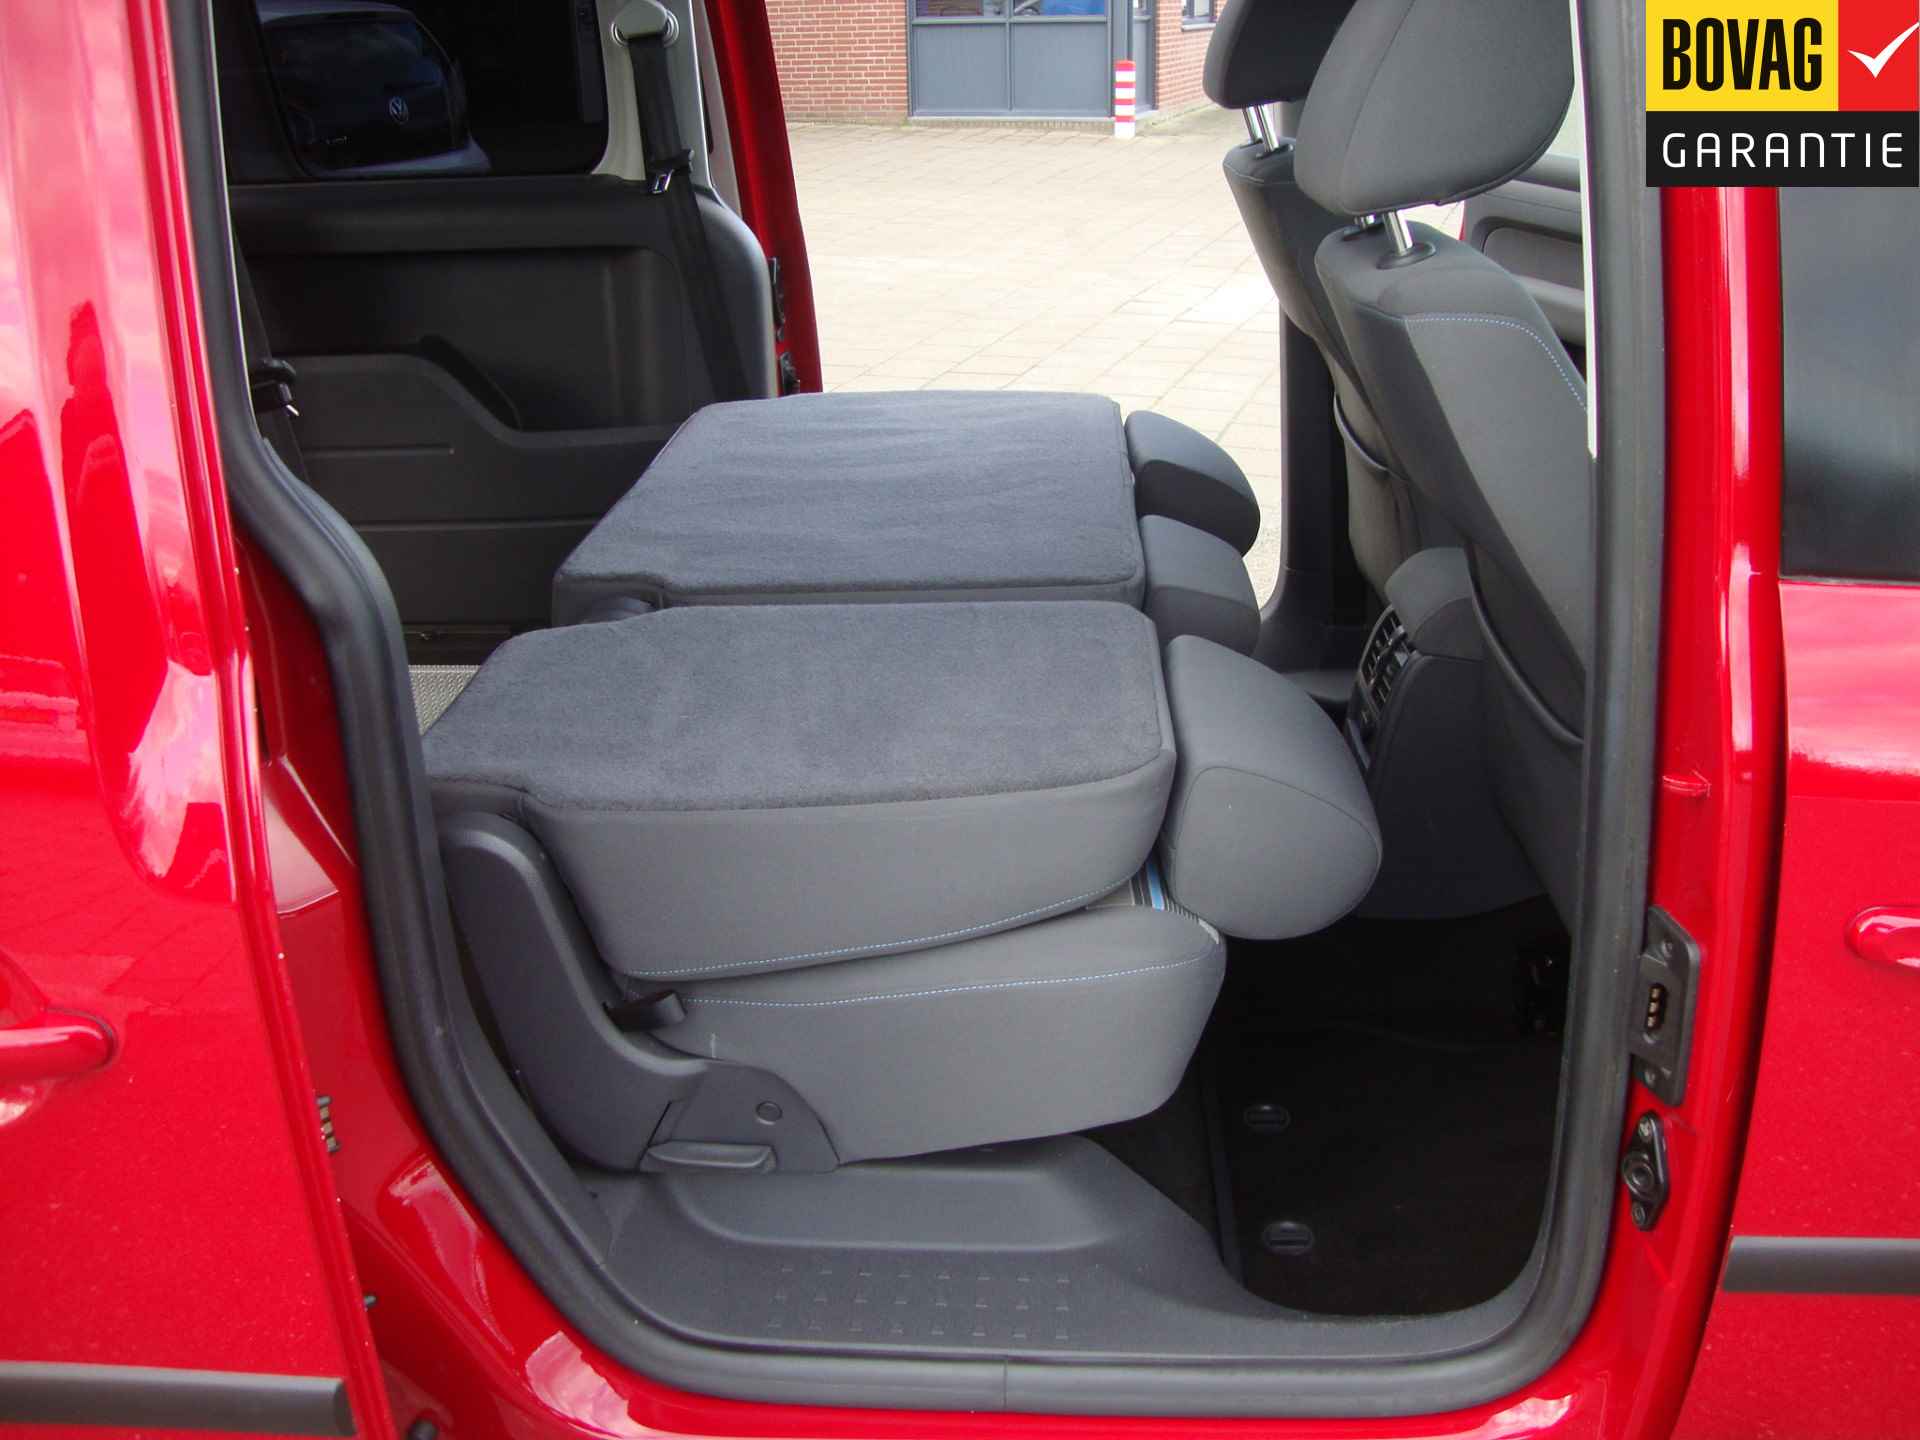 Volkswagen Caddy Maxi 1.2 TSI Trendline Rolstoel / Invalide , 5 pers + 1 rolstoelplaats( Airco,Cruise Control) RIJKLAARPRIJS! - 41/47